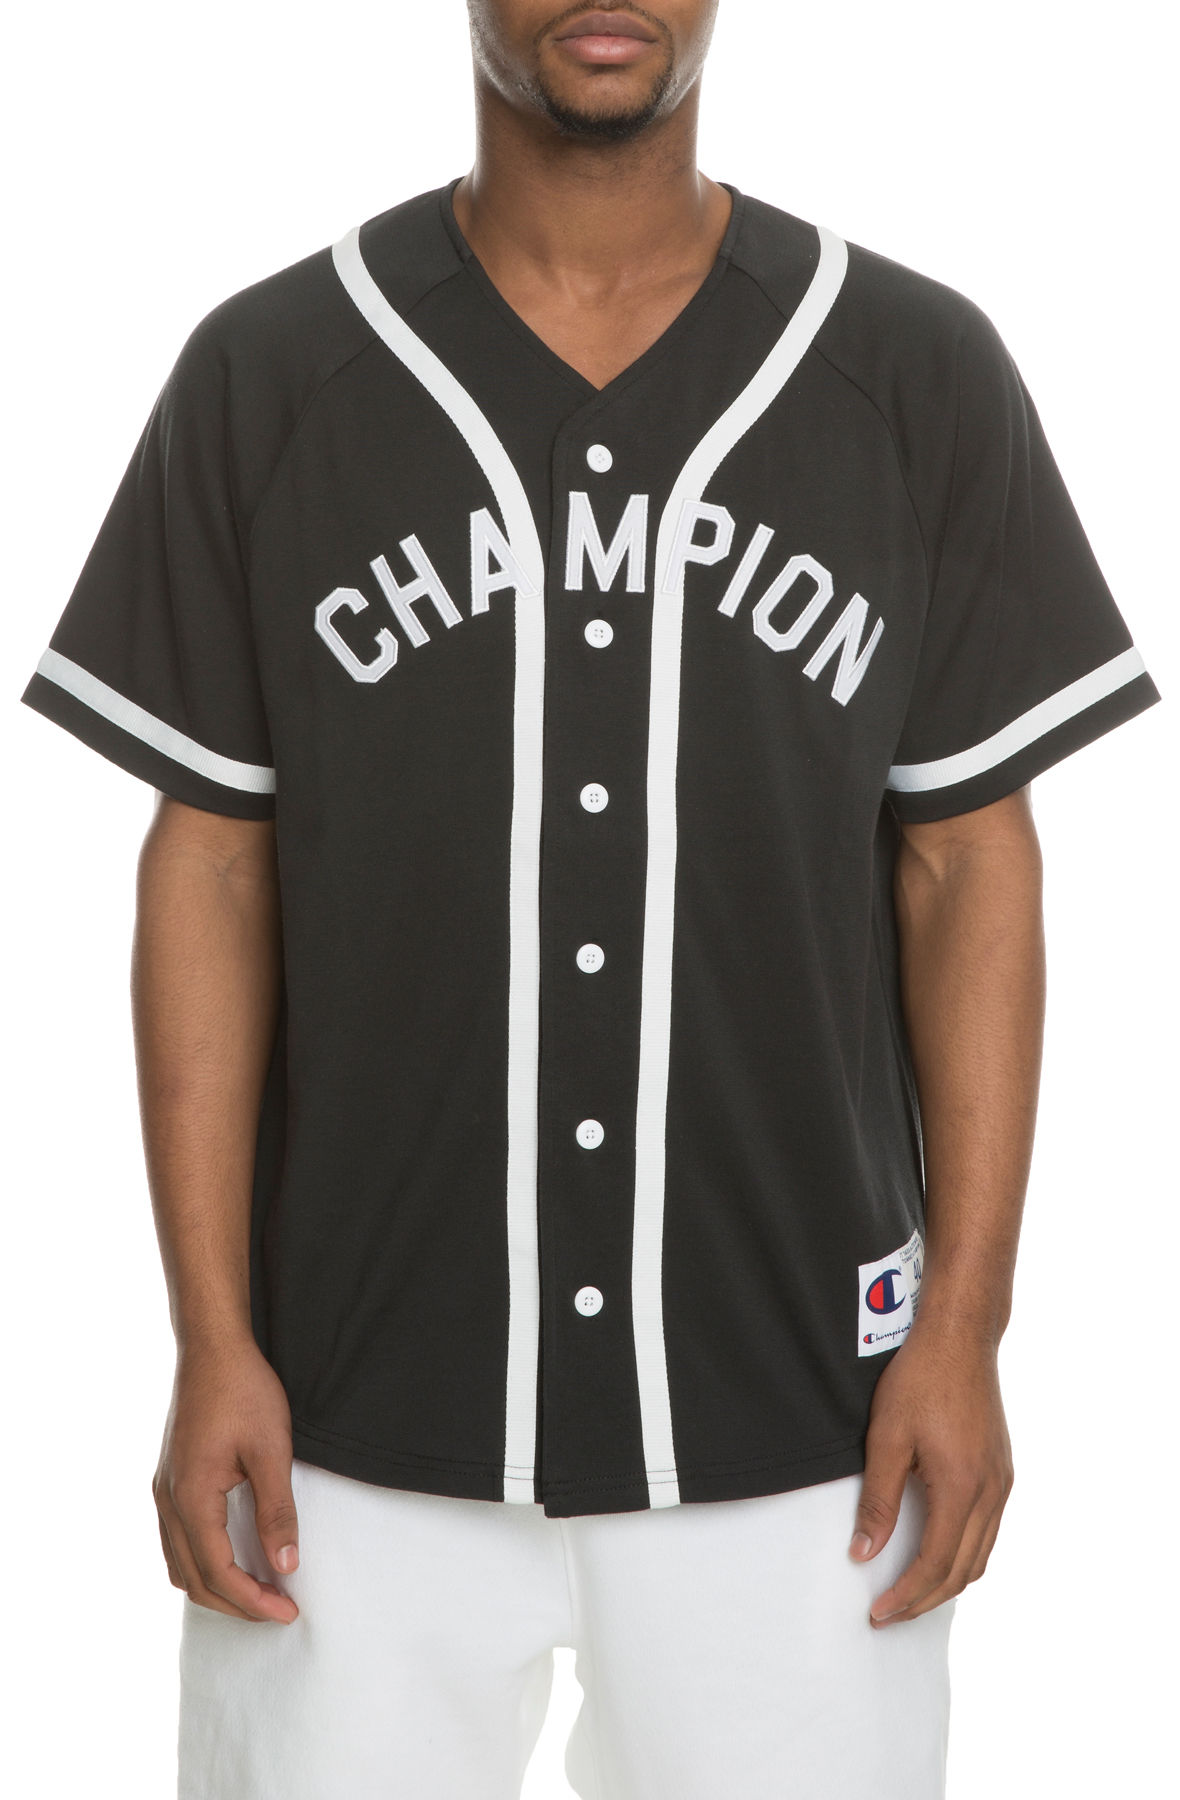 black champion baseball jersey